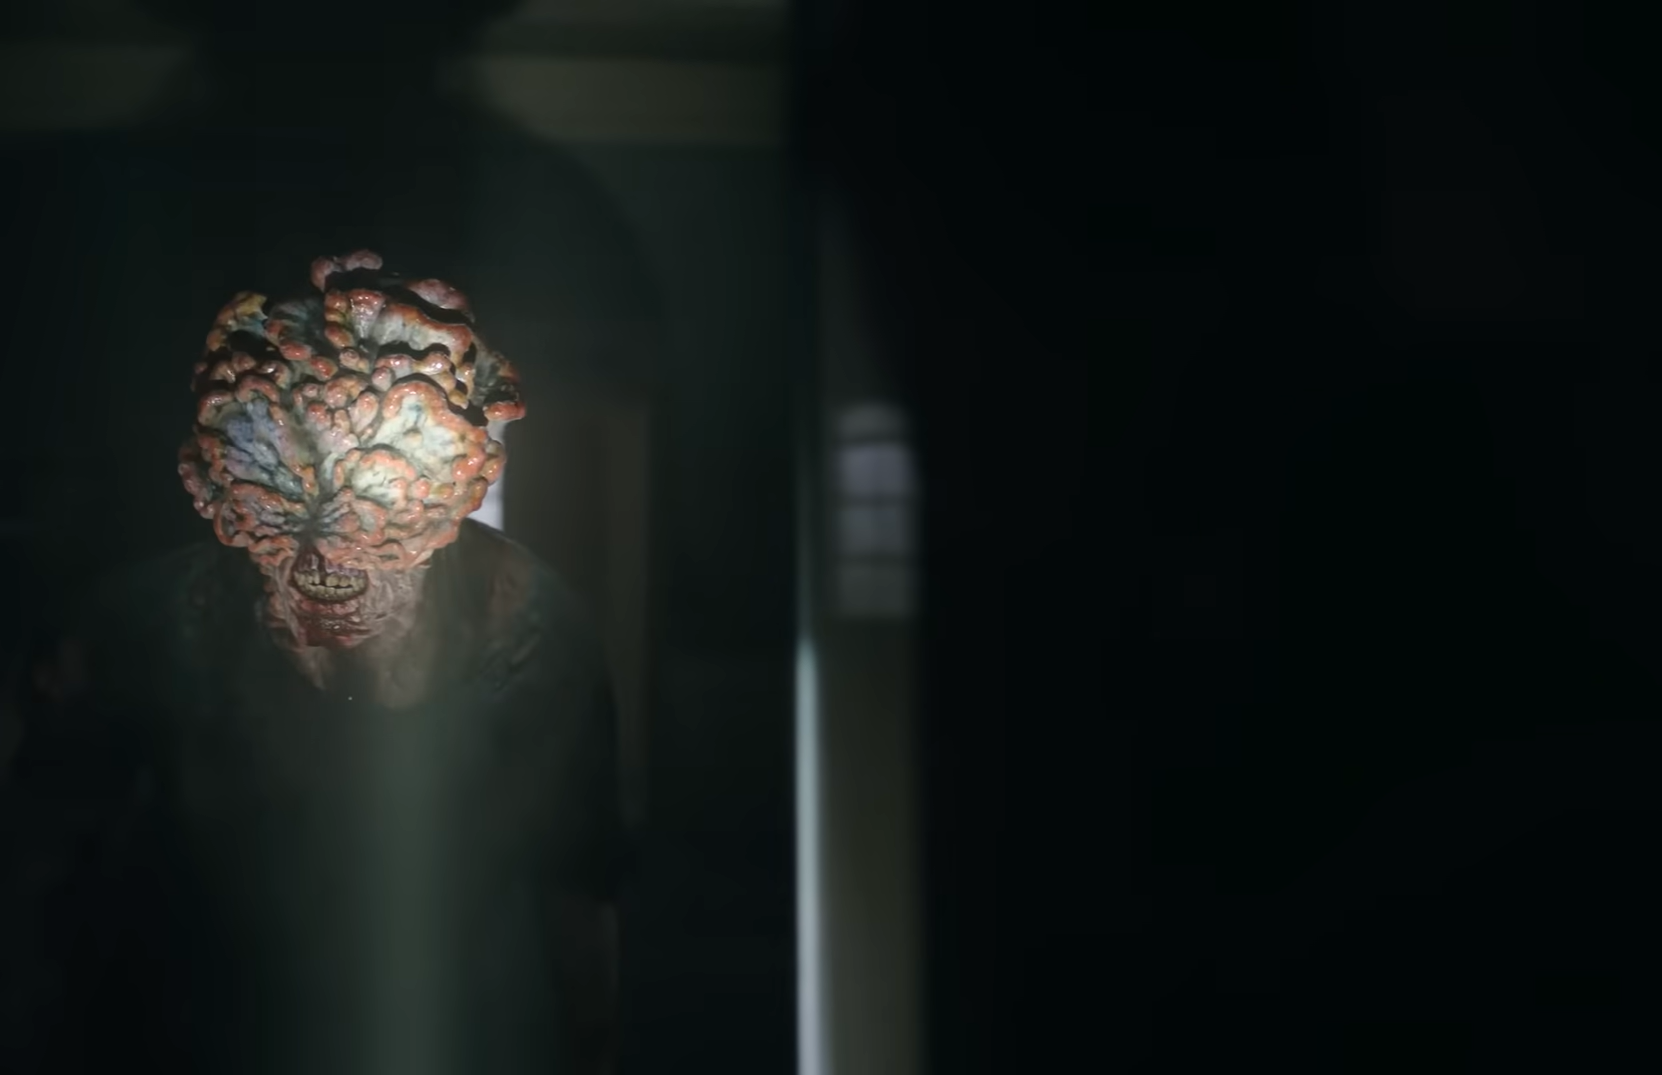 The Last of Us': primeira foto da série revela visuais de Ellie e Joel